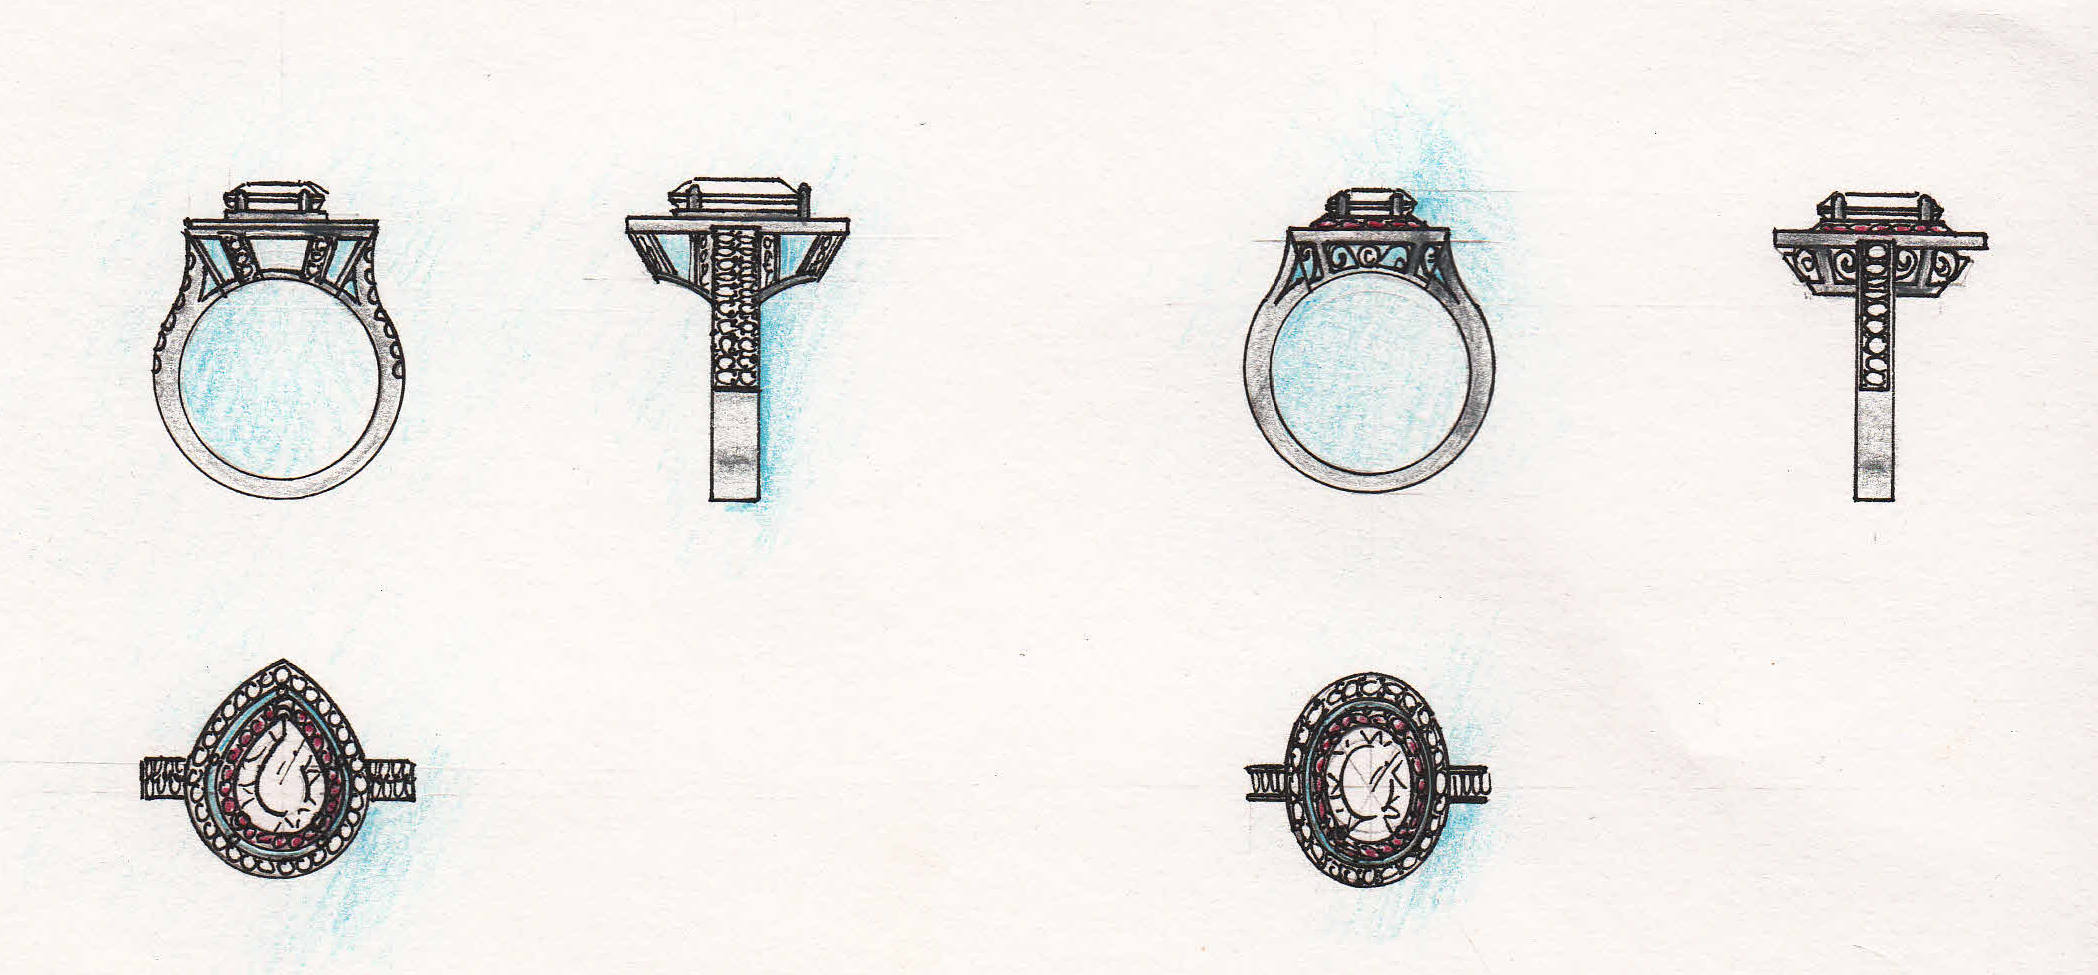 custom ring design drawings